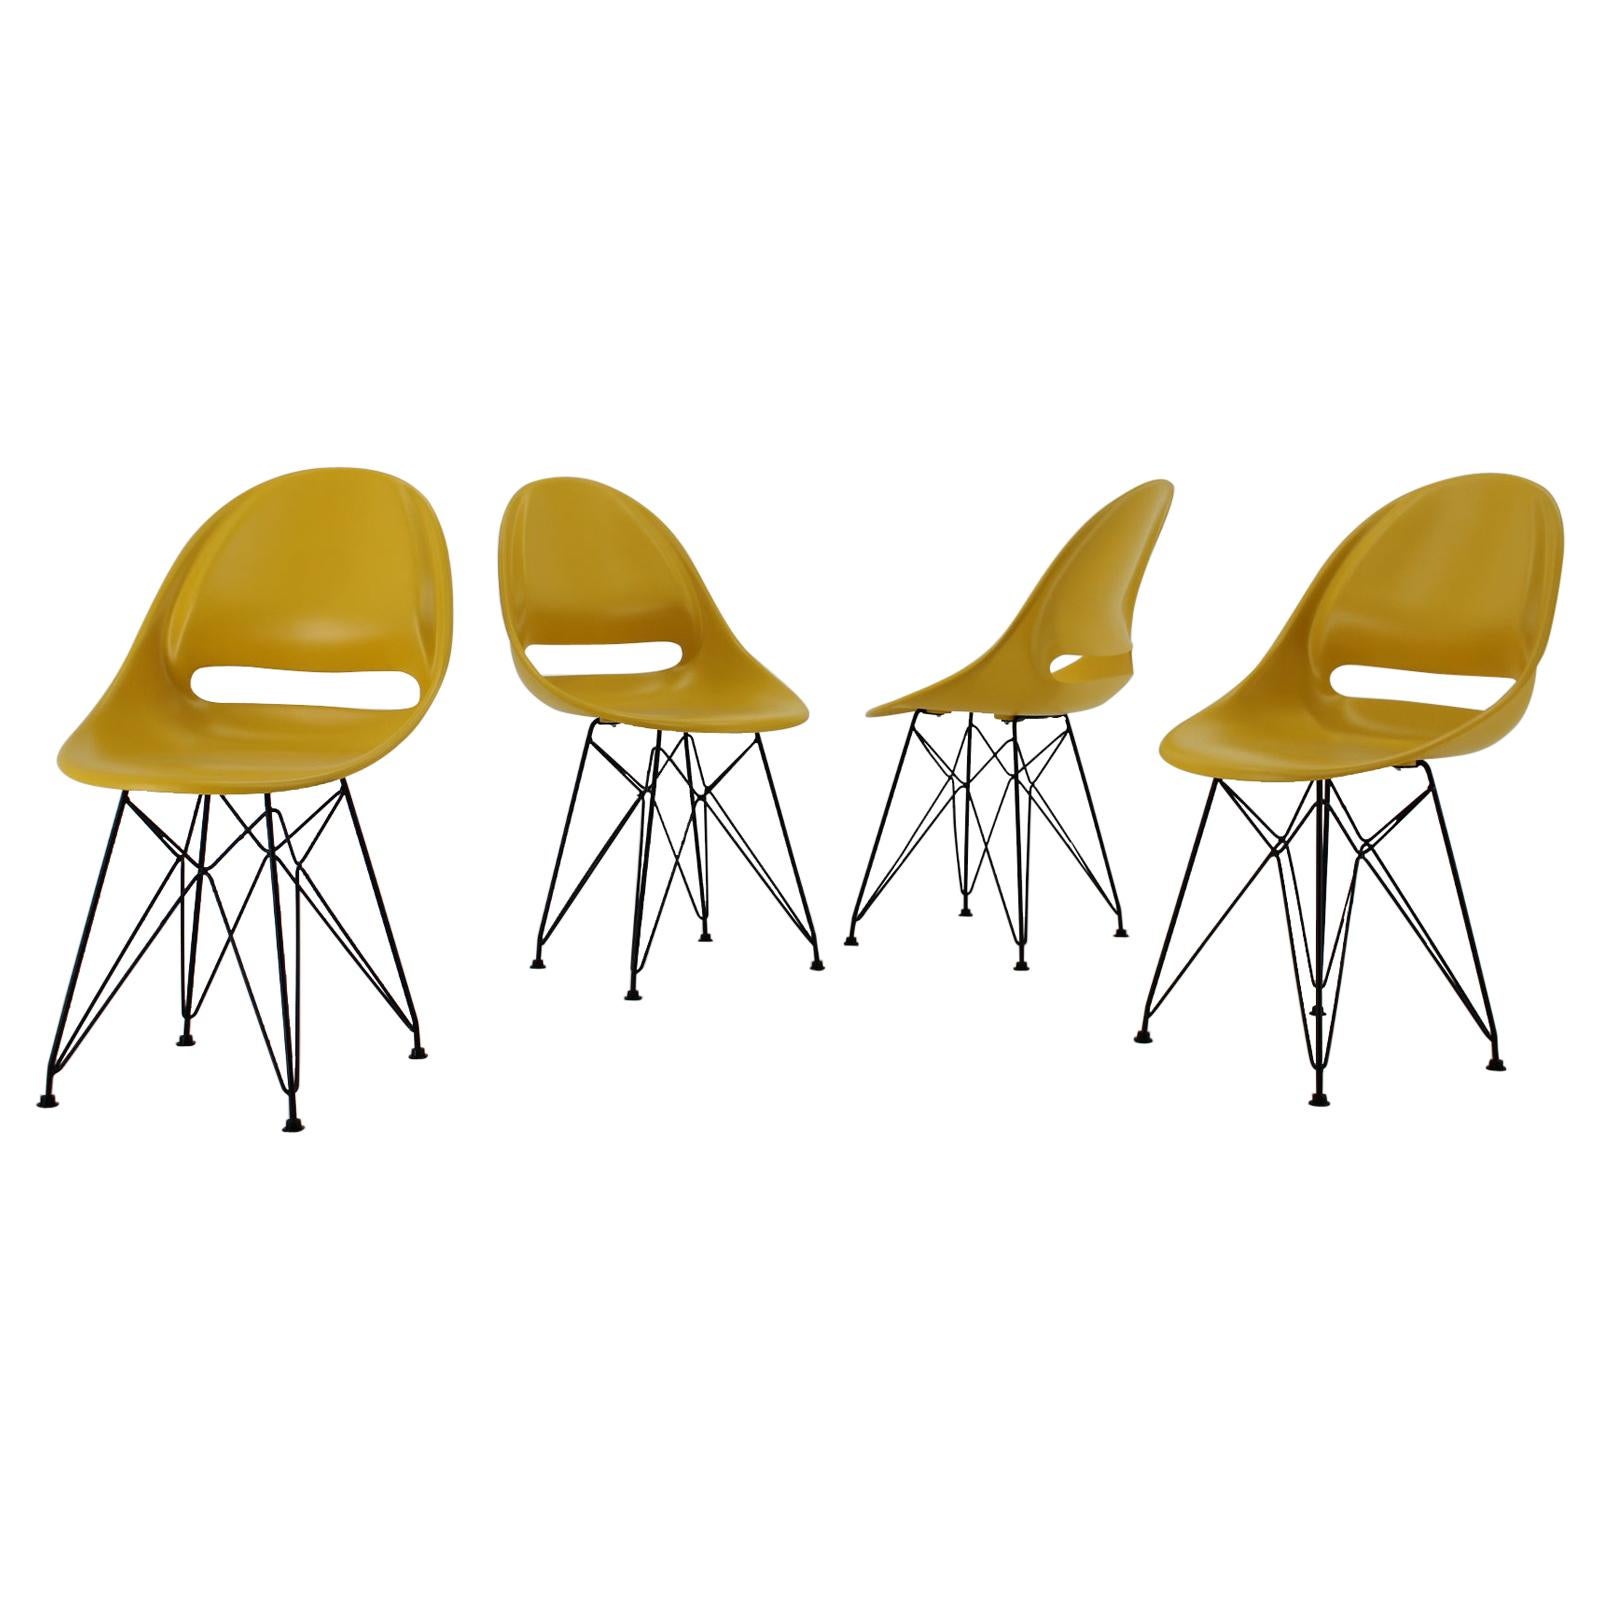 Satz von 4 gelben Glasfaser-Esszimmerstühlen von M.Navratil, Mid-century, 1960er Jahre